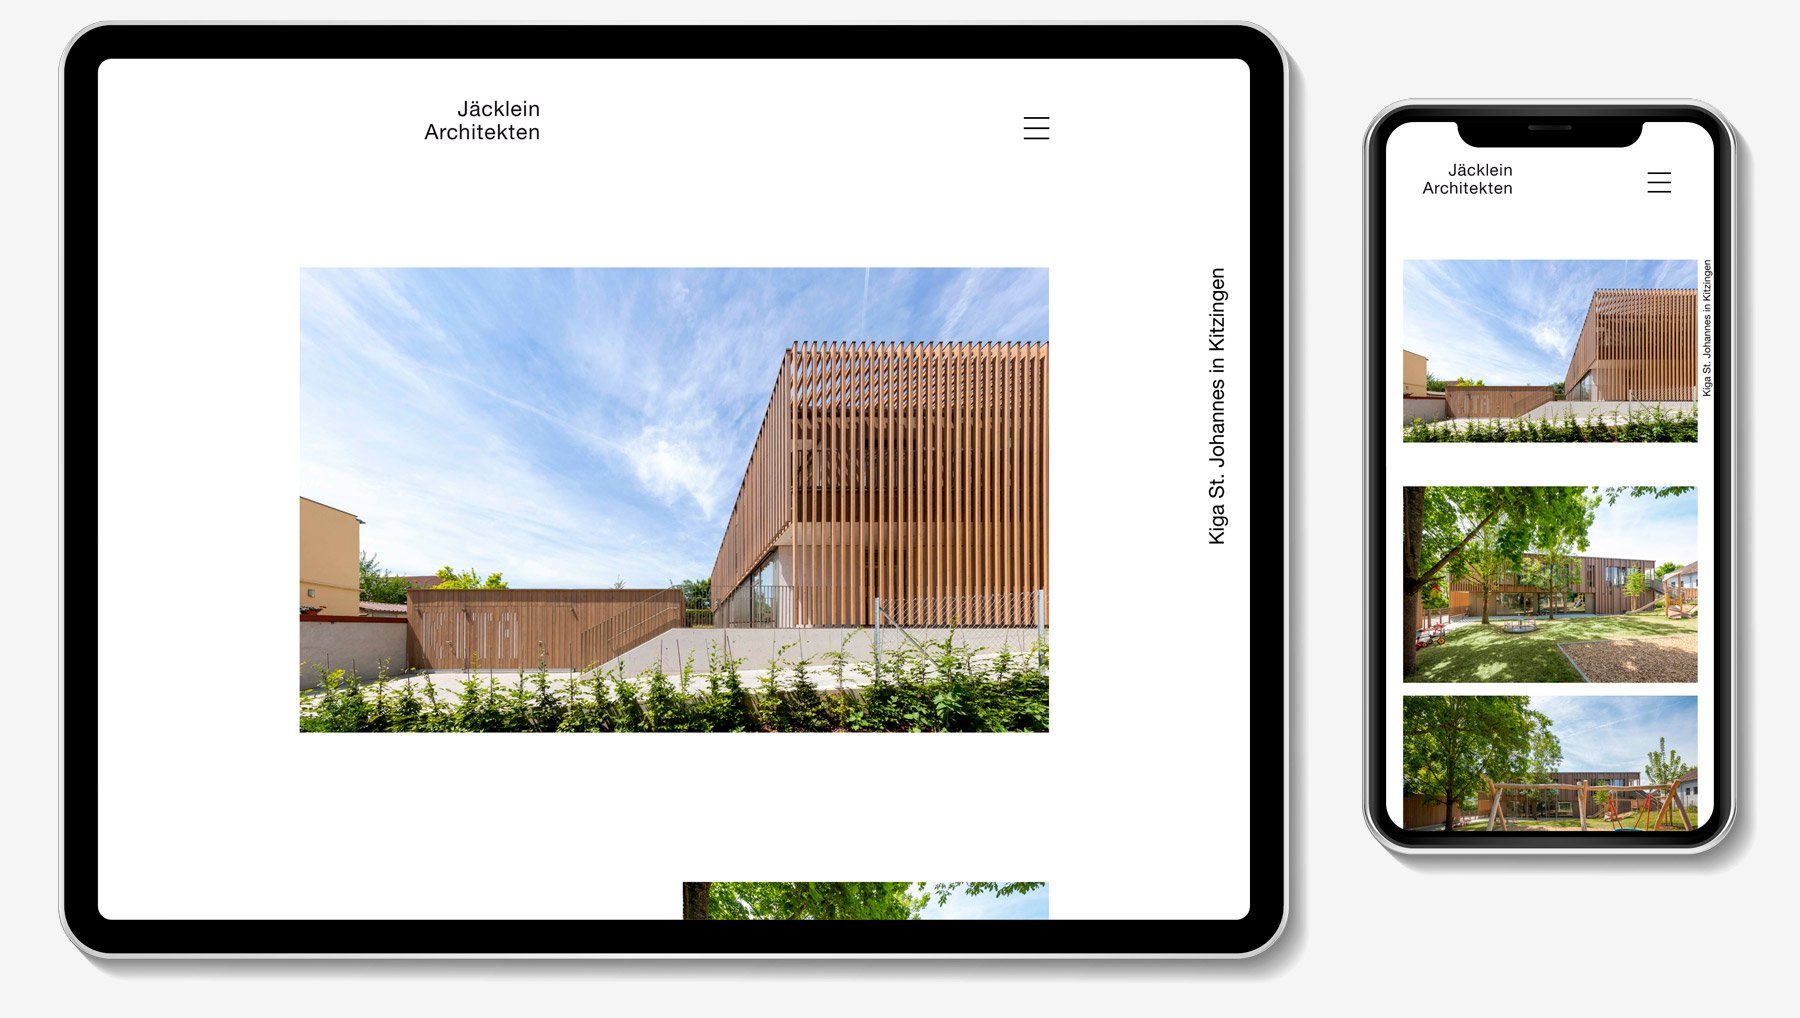 Tablet und Smartphone zeigen einen Ausschnitt der Webseite Architekturbüro Jäcklein